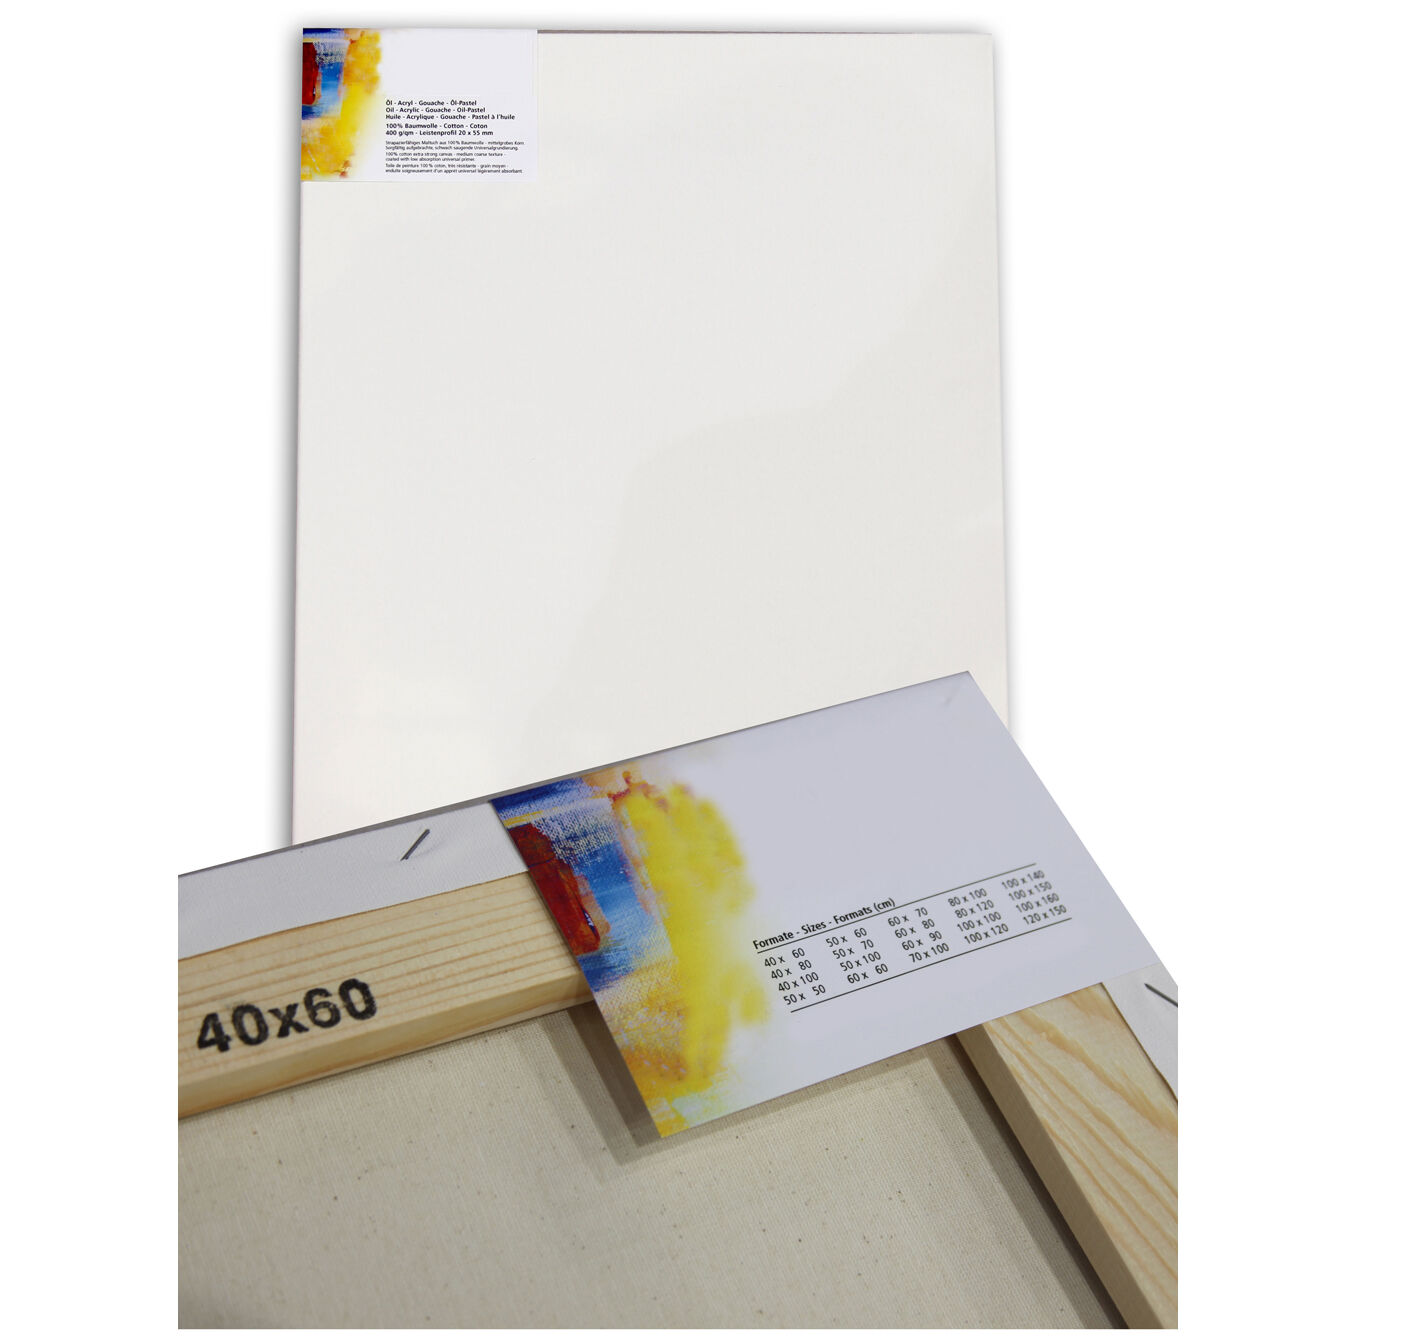 NEU Cotton 400 Premium-Keilrahmen Professionell 20mm Leistenstärke, 100x100cm - 1 Stück Bild 2